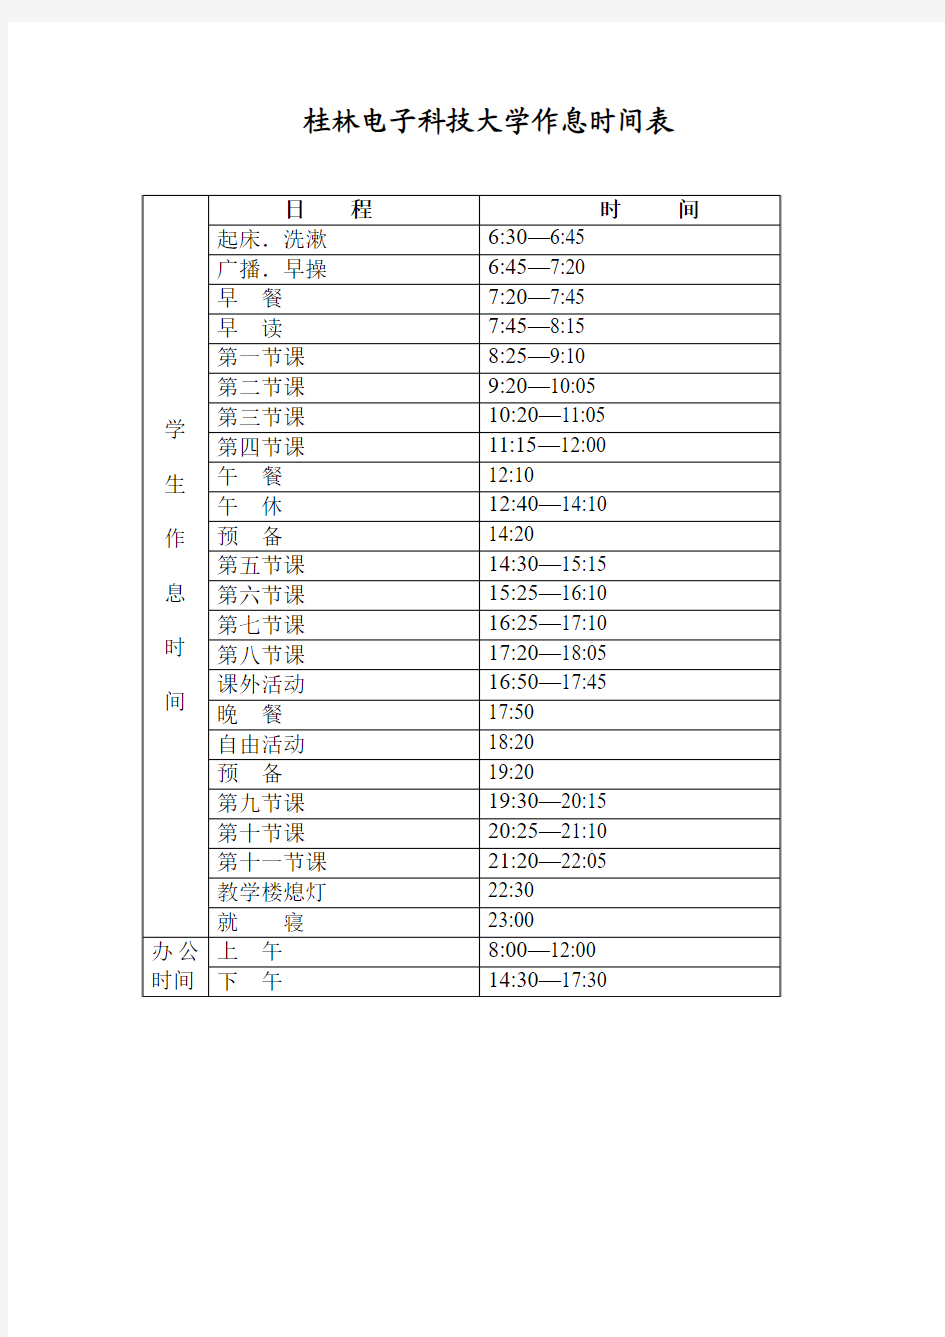 桂林电子科技大学作息时间表